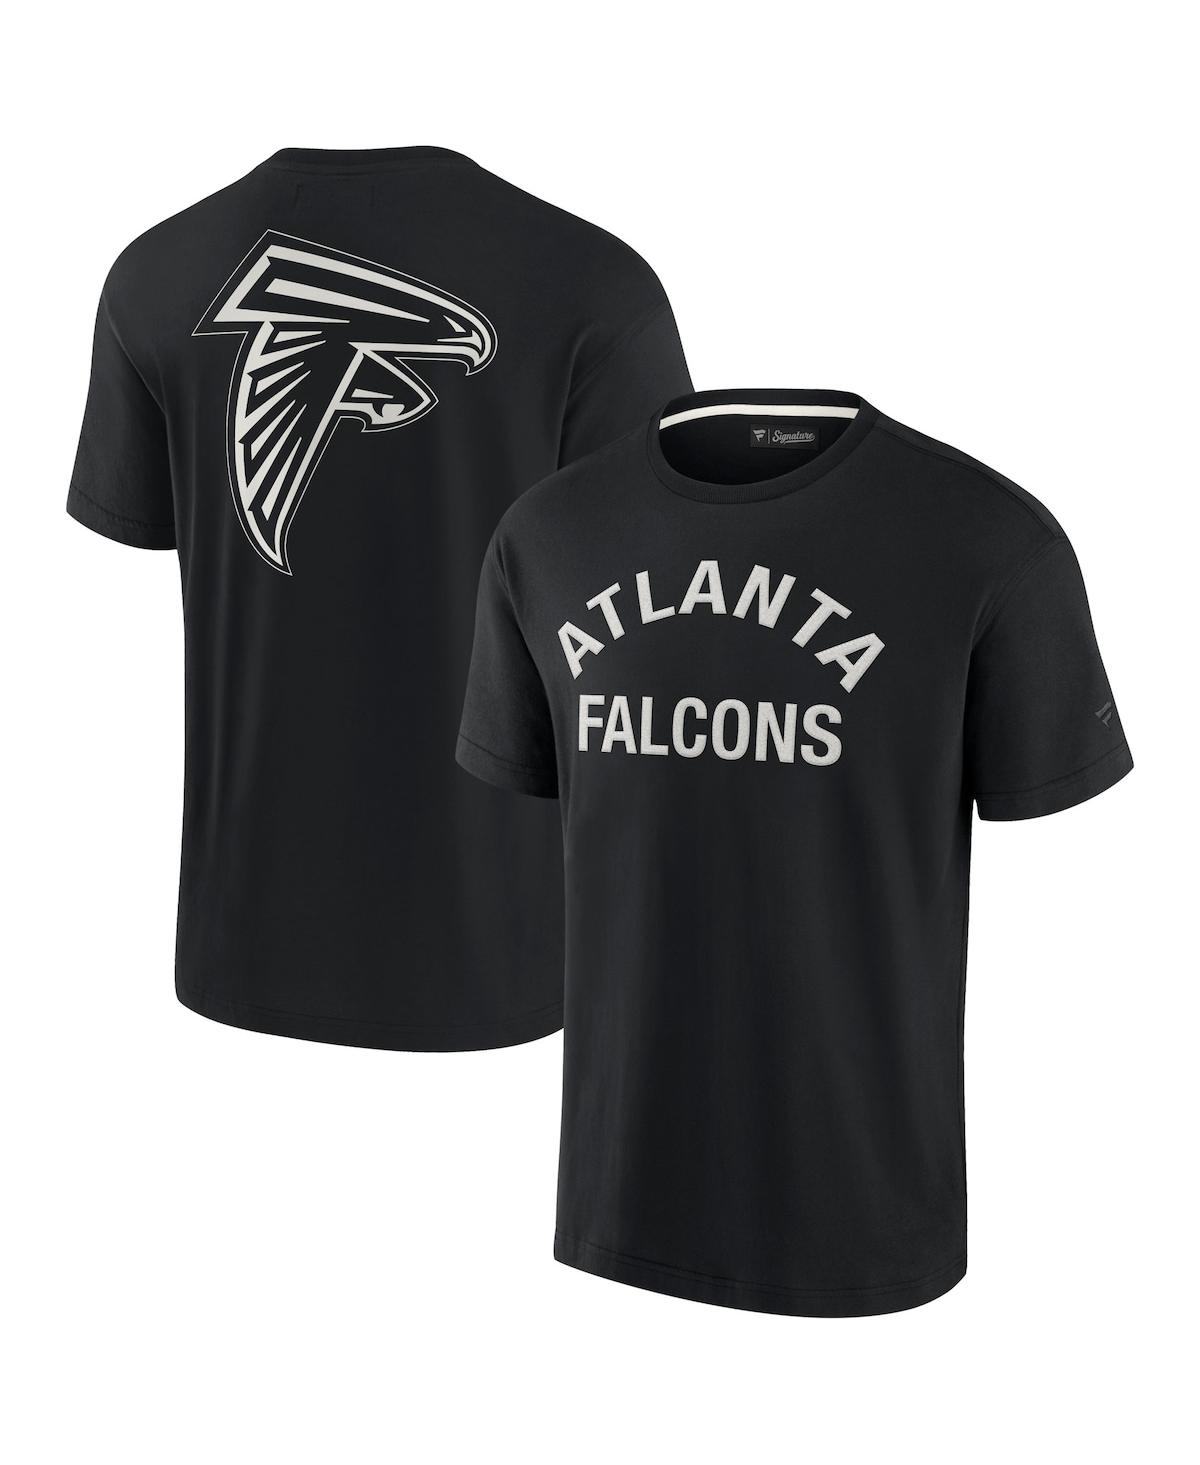 Men's and Women's Fanatics Signature Black Atlanta Falcons Super Soft Short Sleeve T-shirt - Black